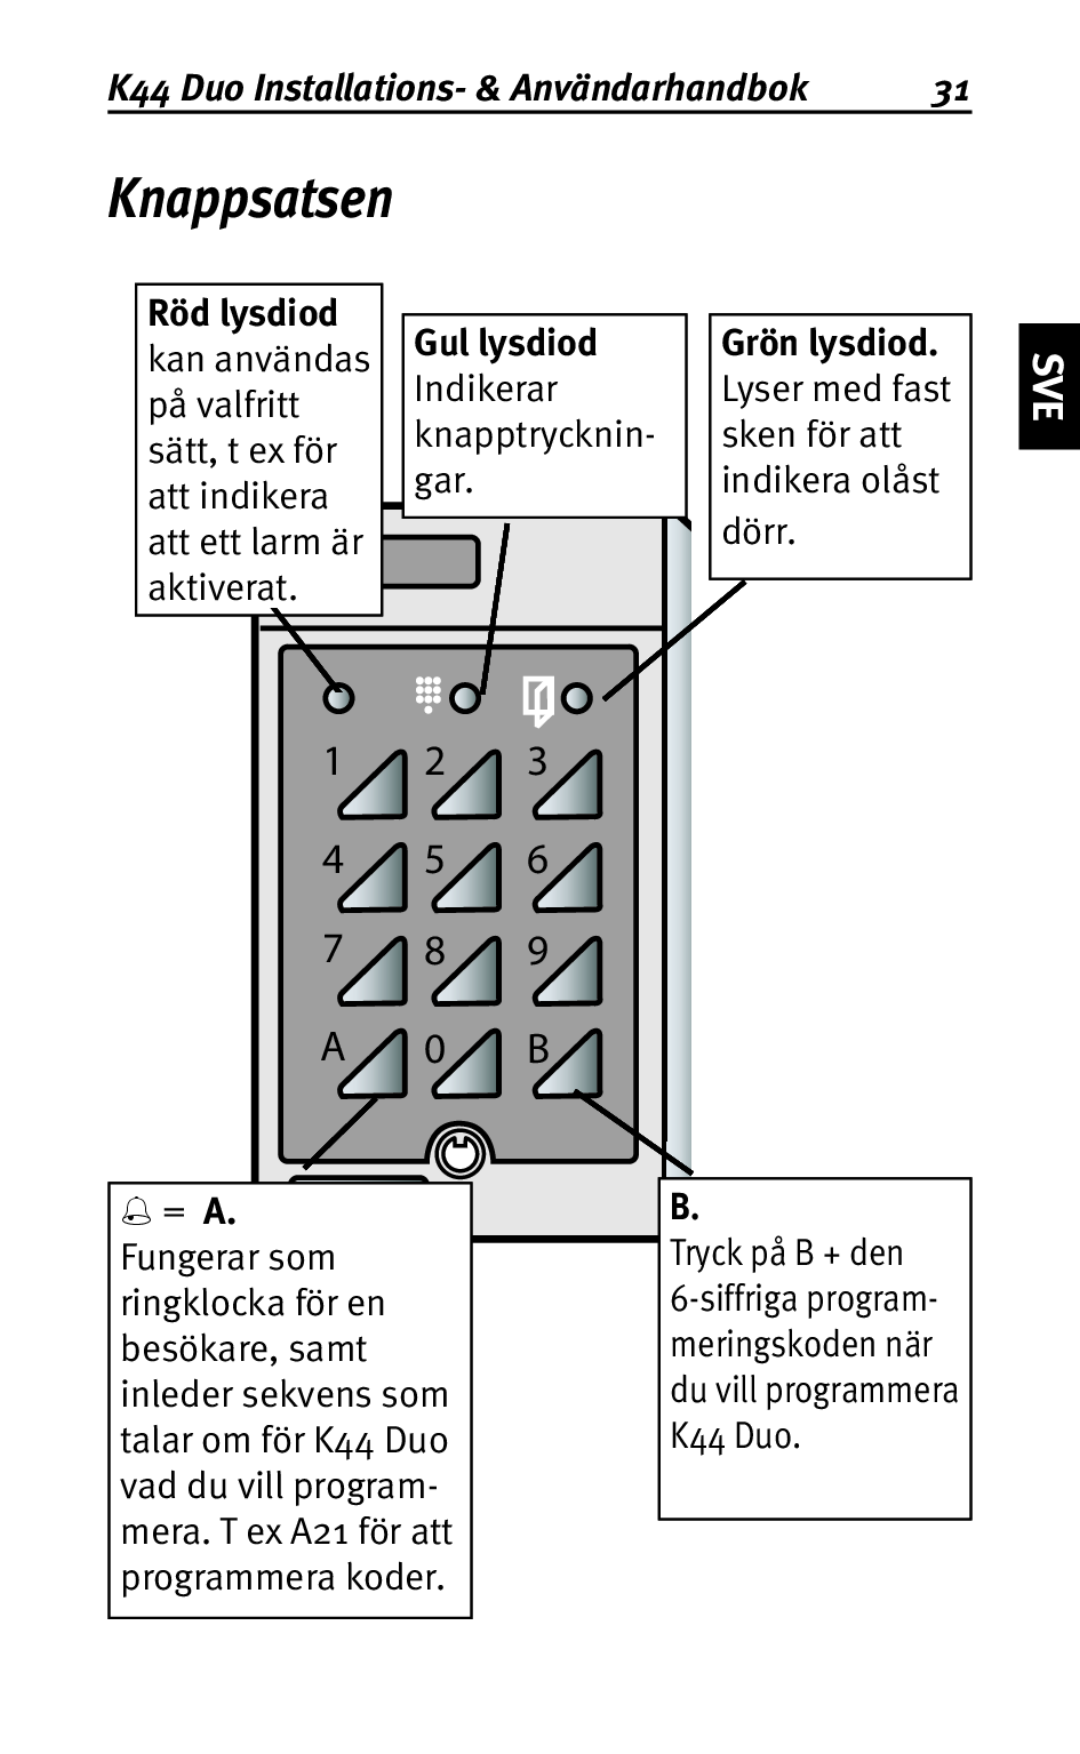 Siemens user manual Knappsatsen, dörr, Tryck på B + den, K44 Duo Installations- & Användarhandbok 